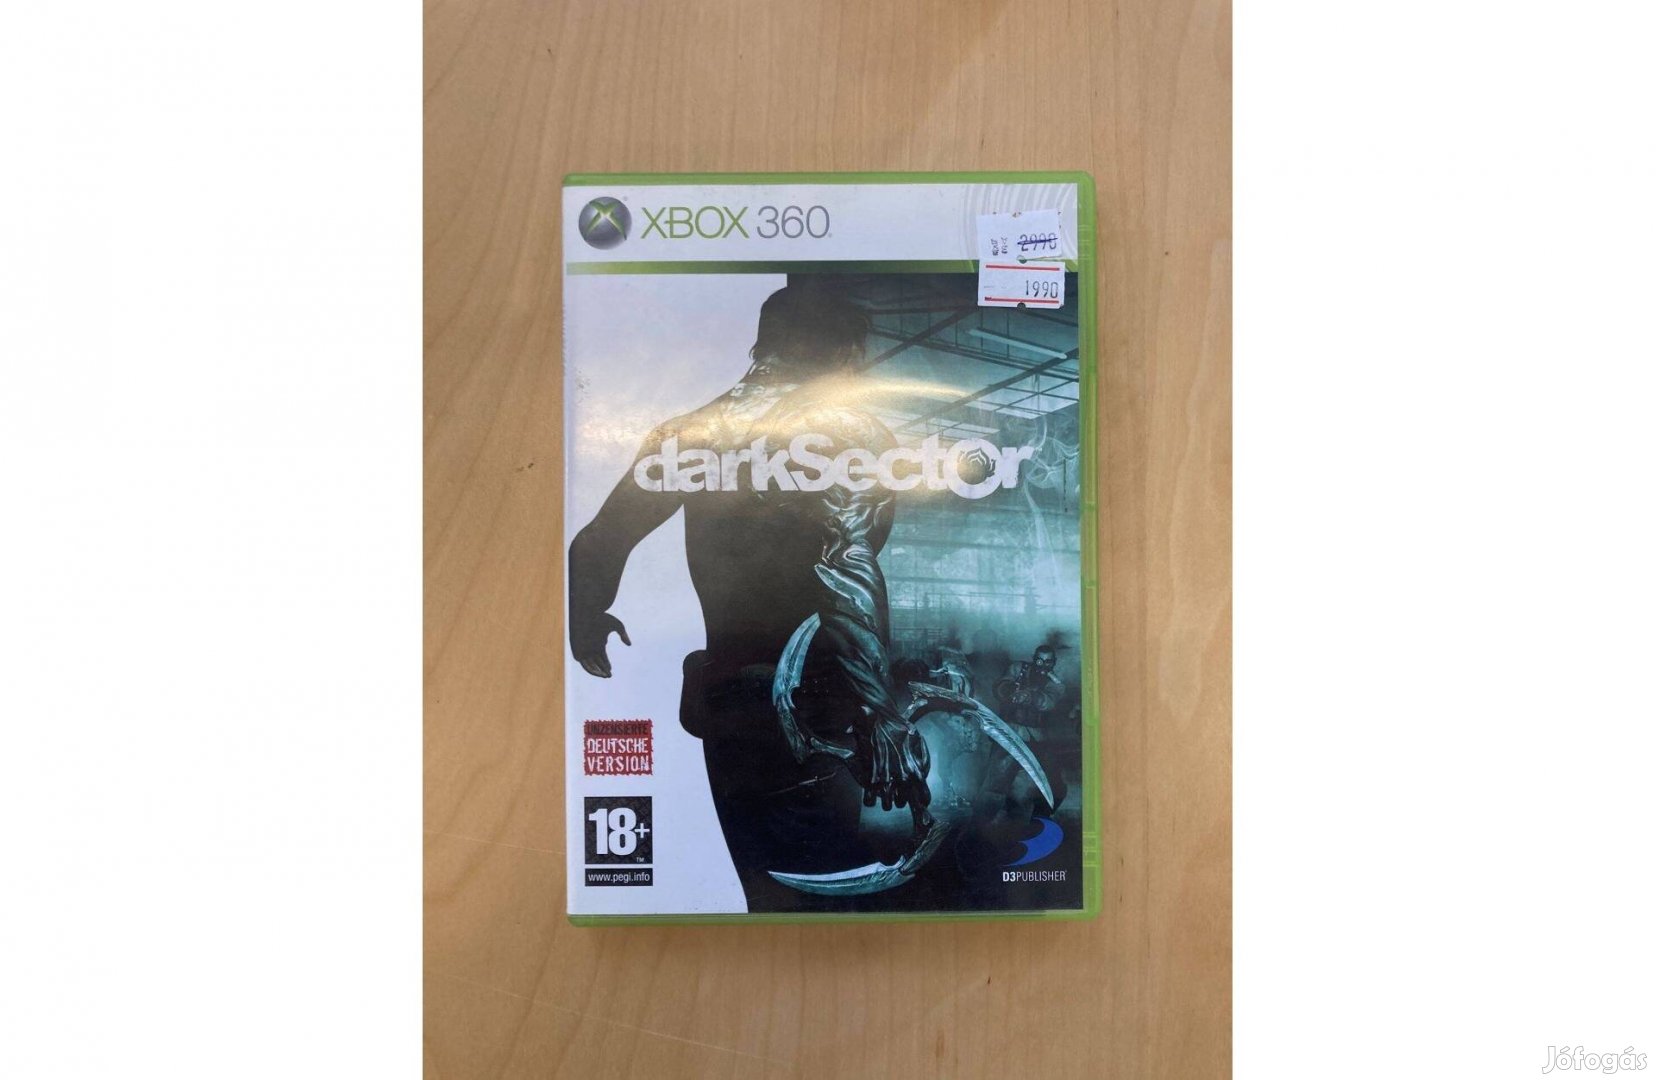 Xbox 360 Dark Sector